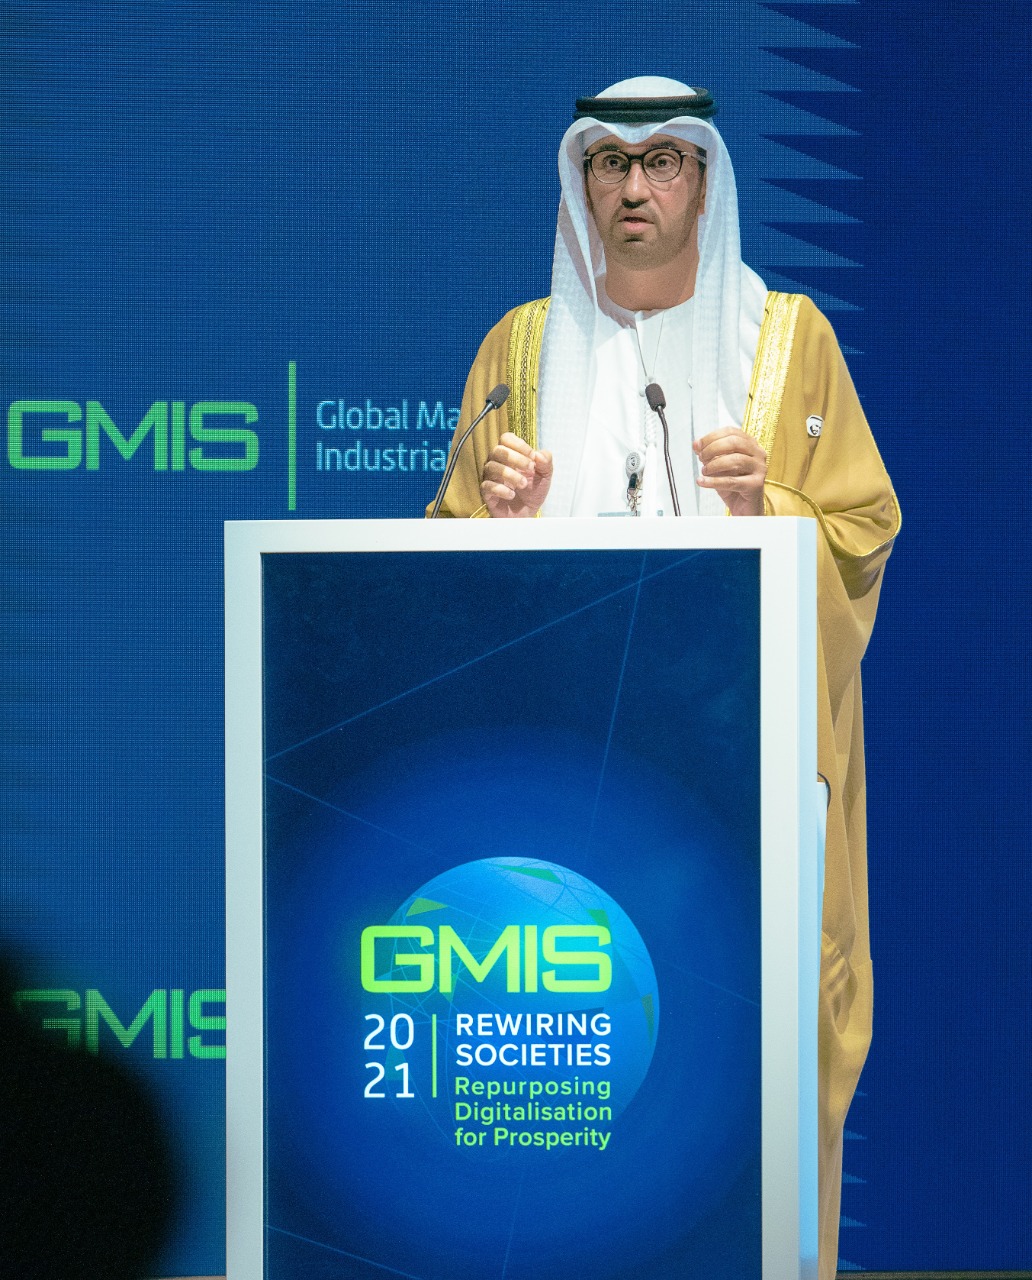 بدر سليم سلطان العلماء، رئيس اللجنة التنظيمية للقمة العالمية للصناعة والتصنيع (2)